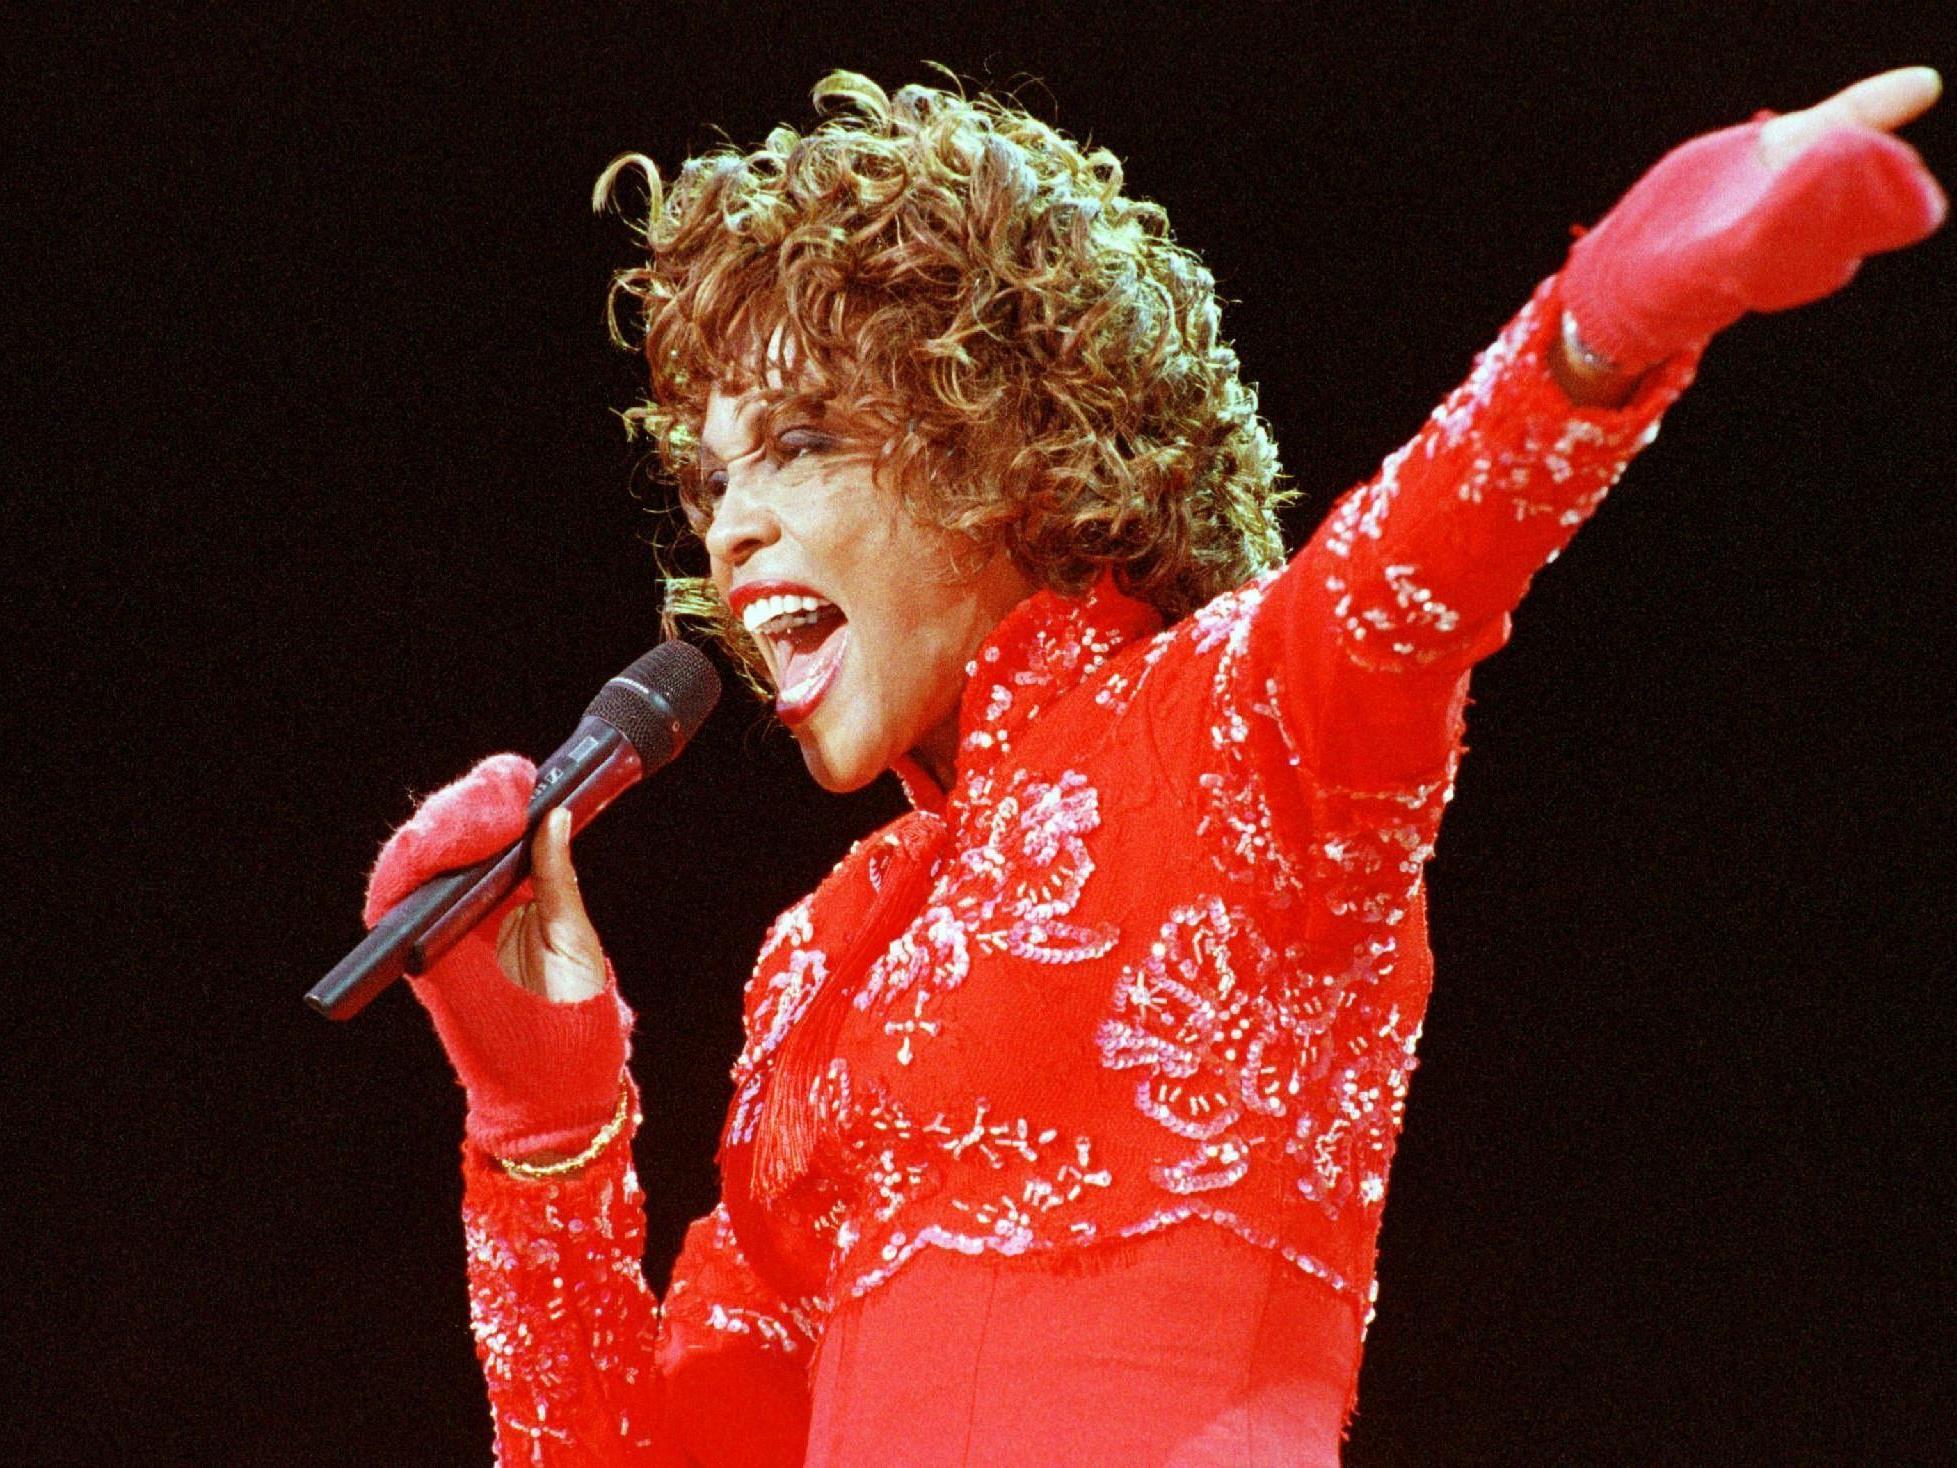 Zwei Songs der Popdiva Whitney Houston sind nun aufgetaucht.